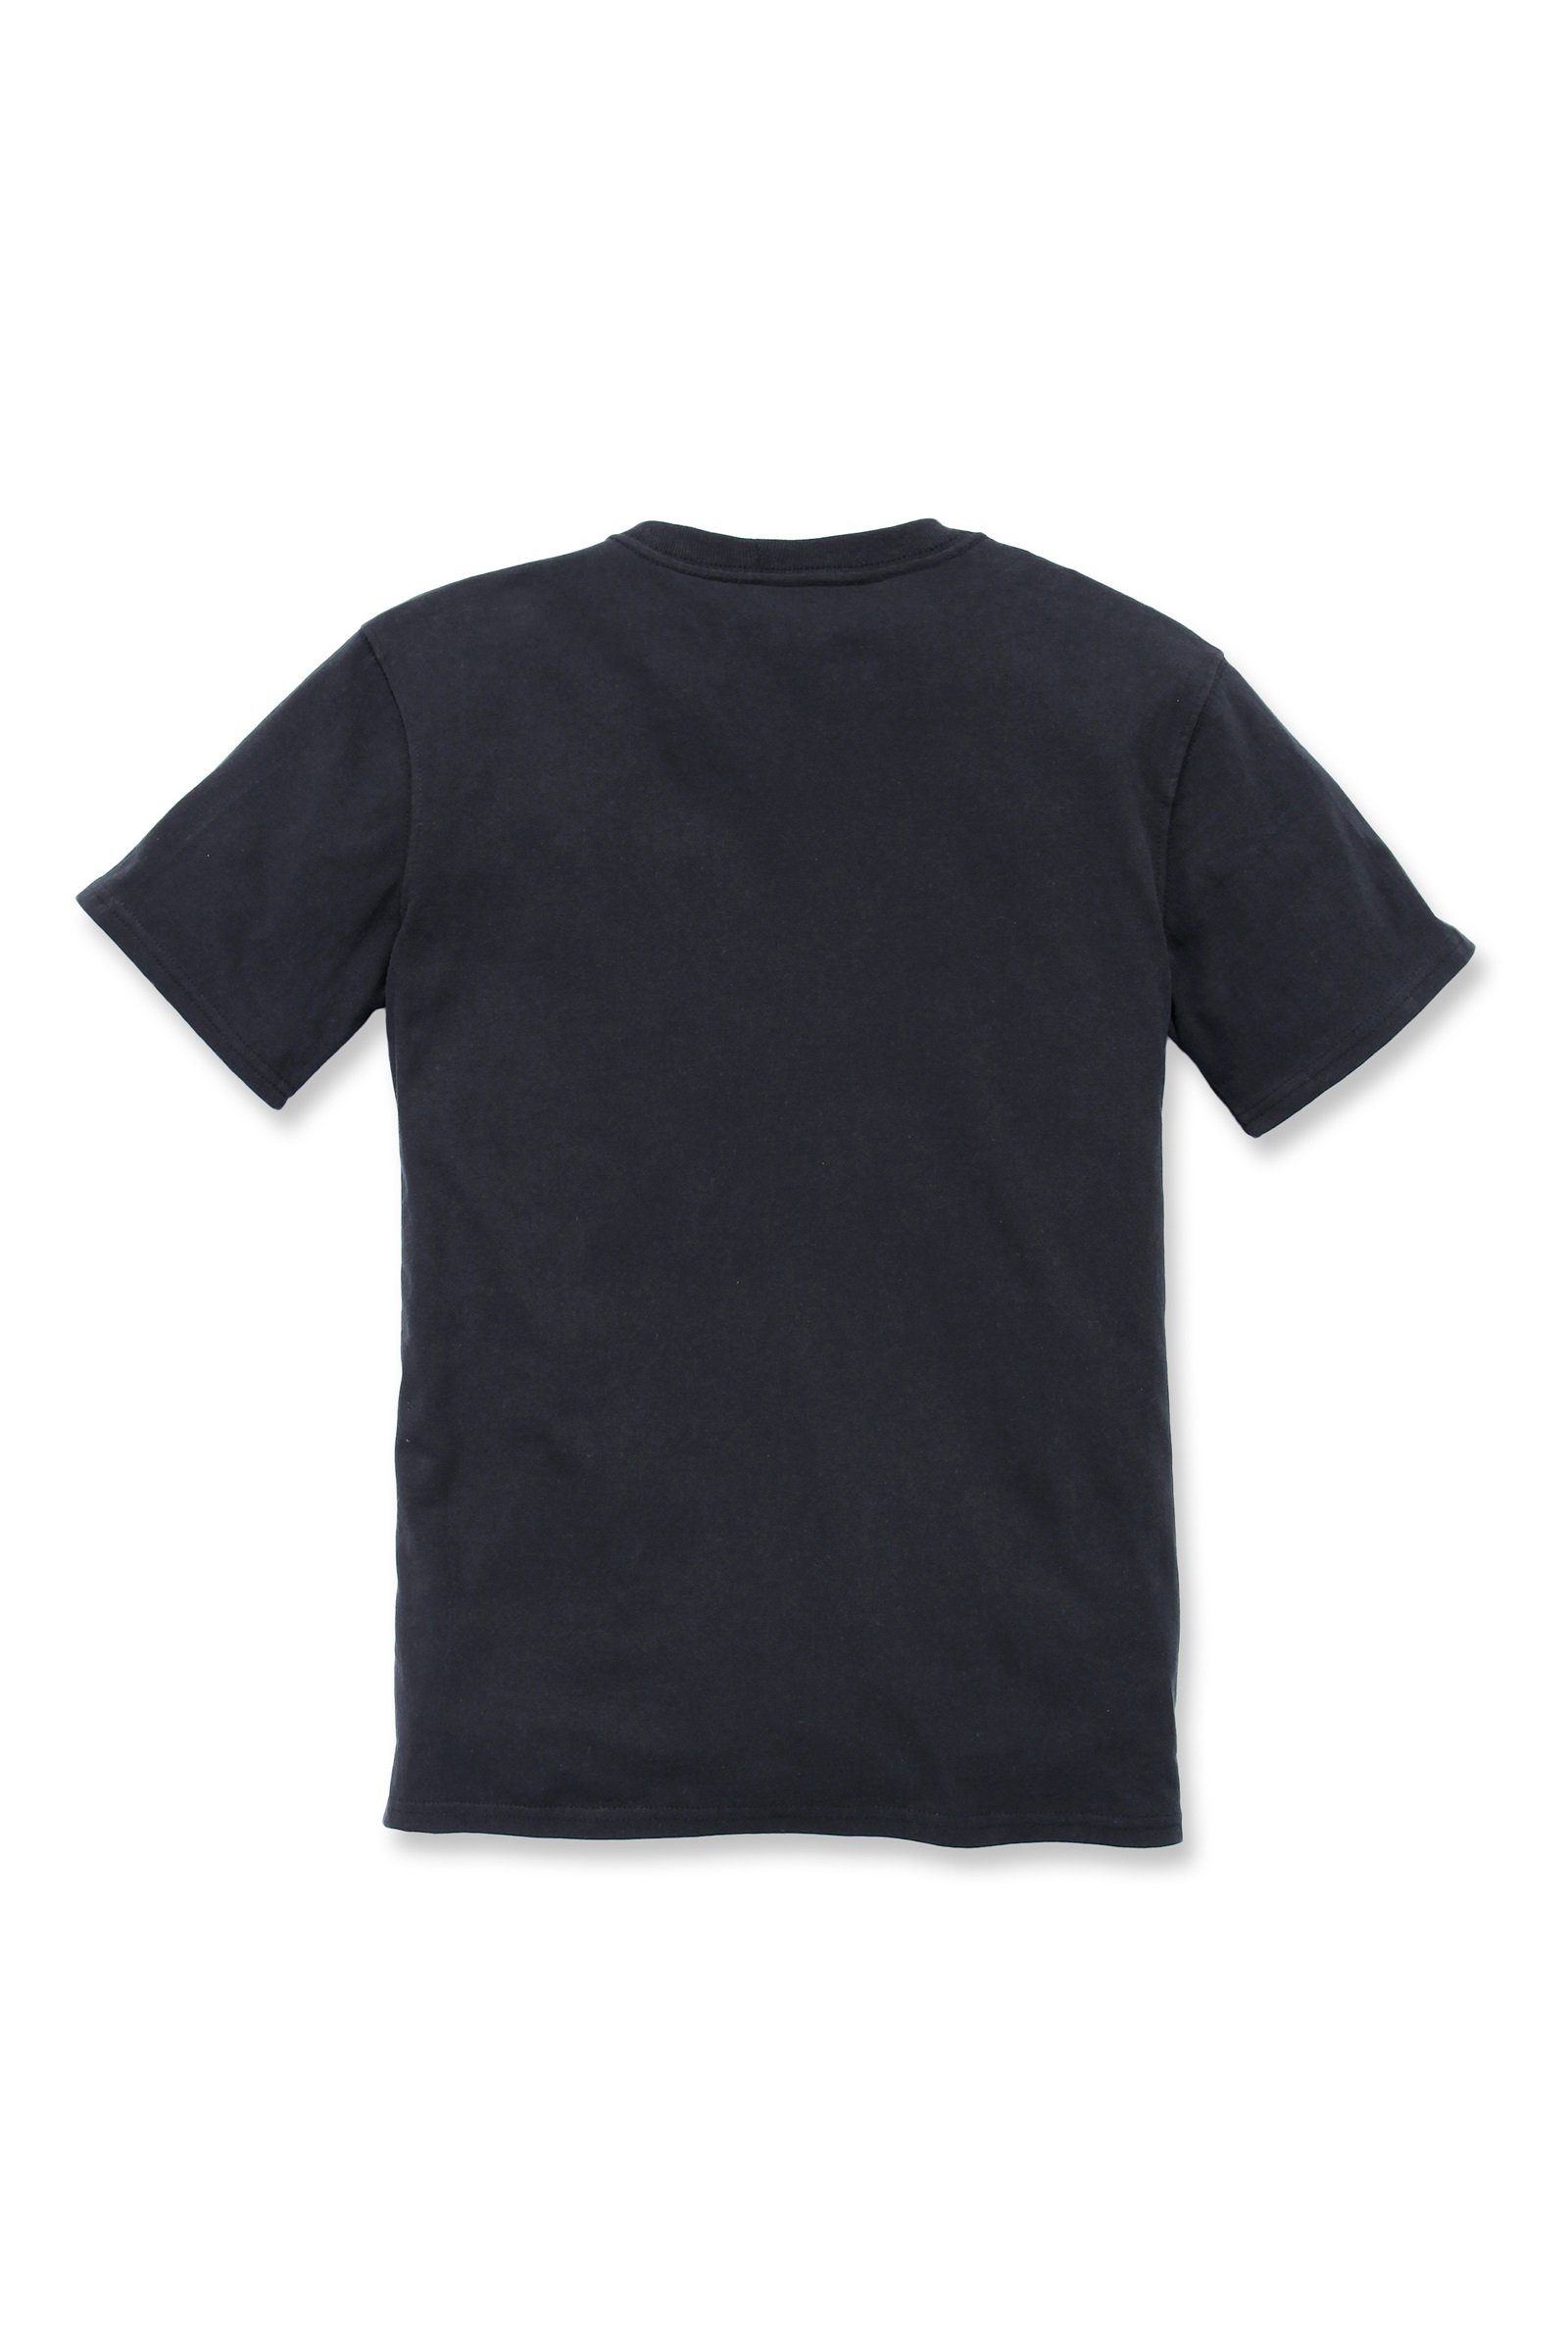 Loose Pocket Damen T-Shirt Carhartt black Short-Sleeve Carhartt Fit T-Shirt Adult Heavyweight